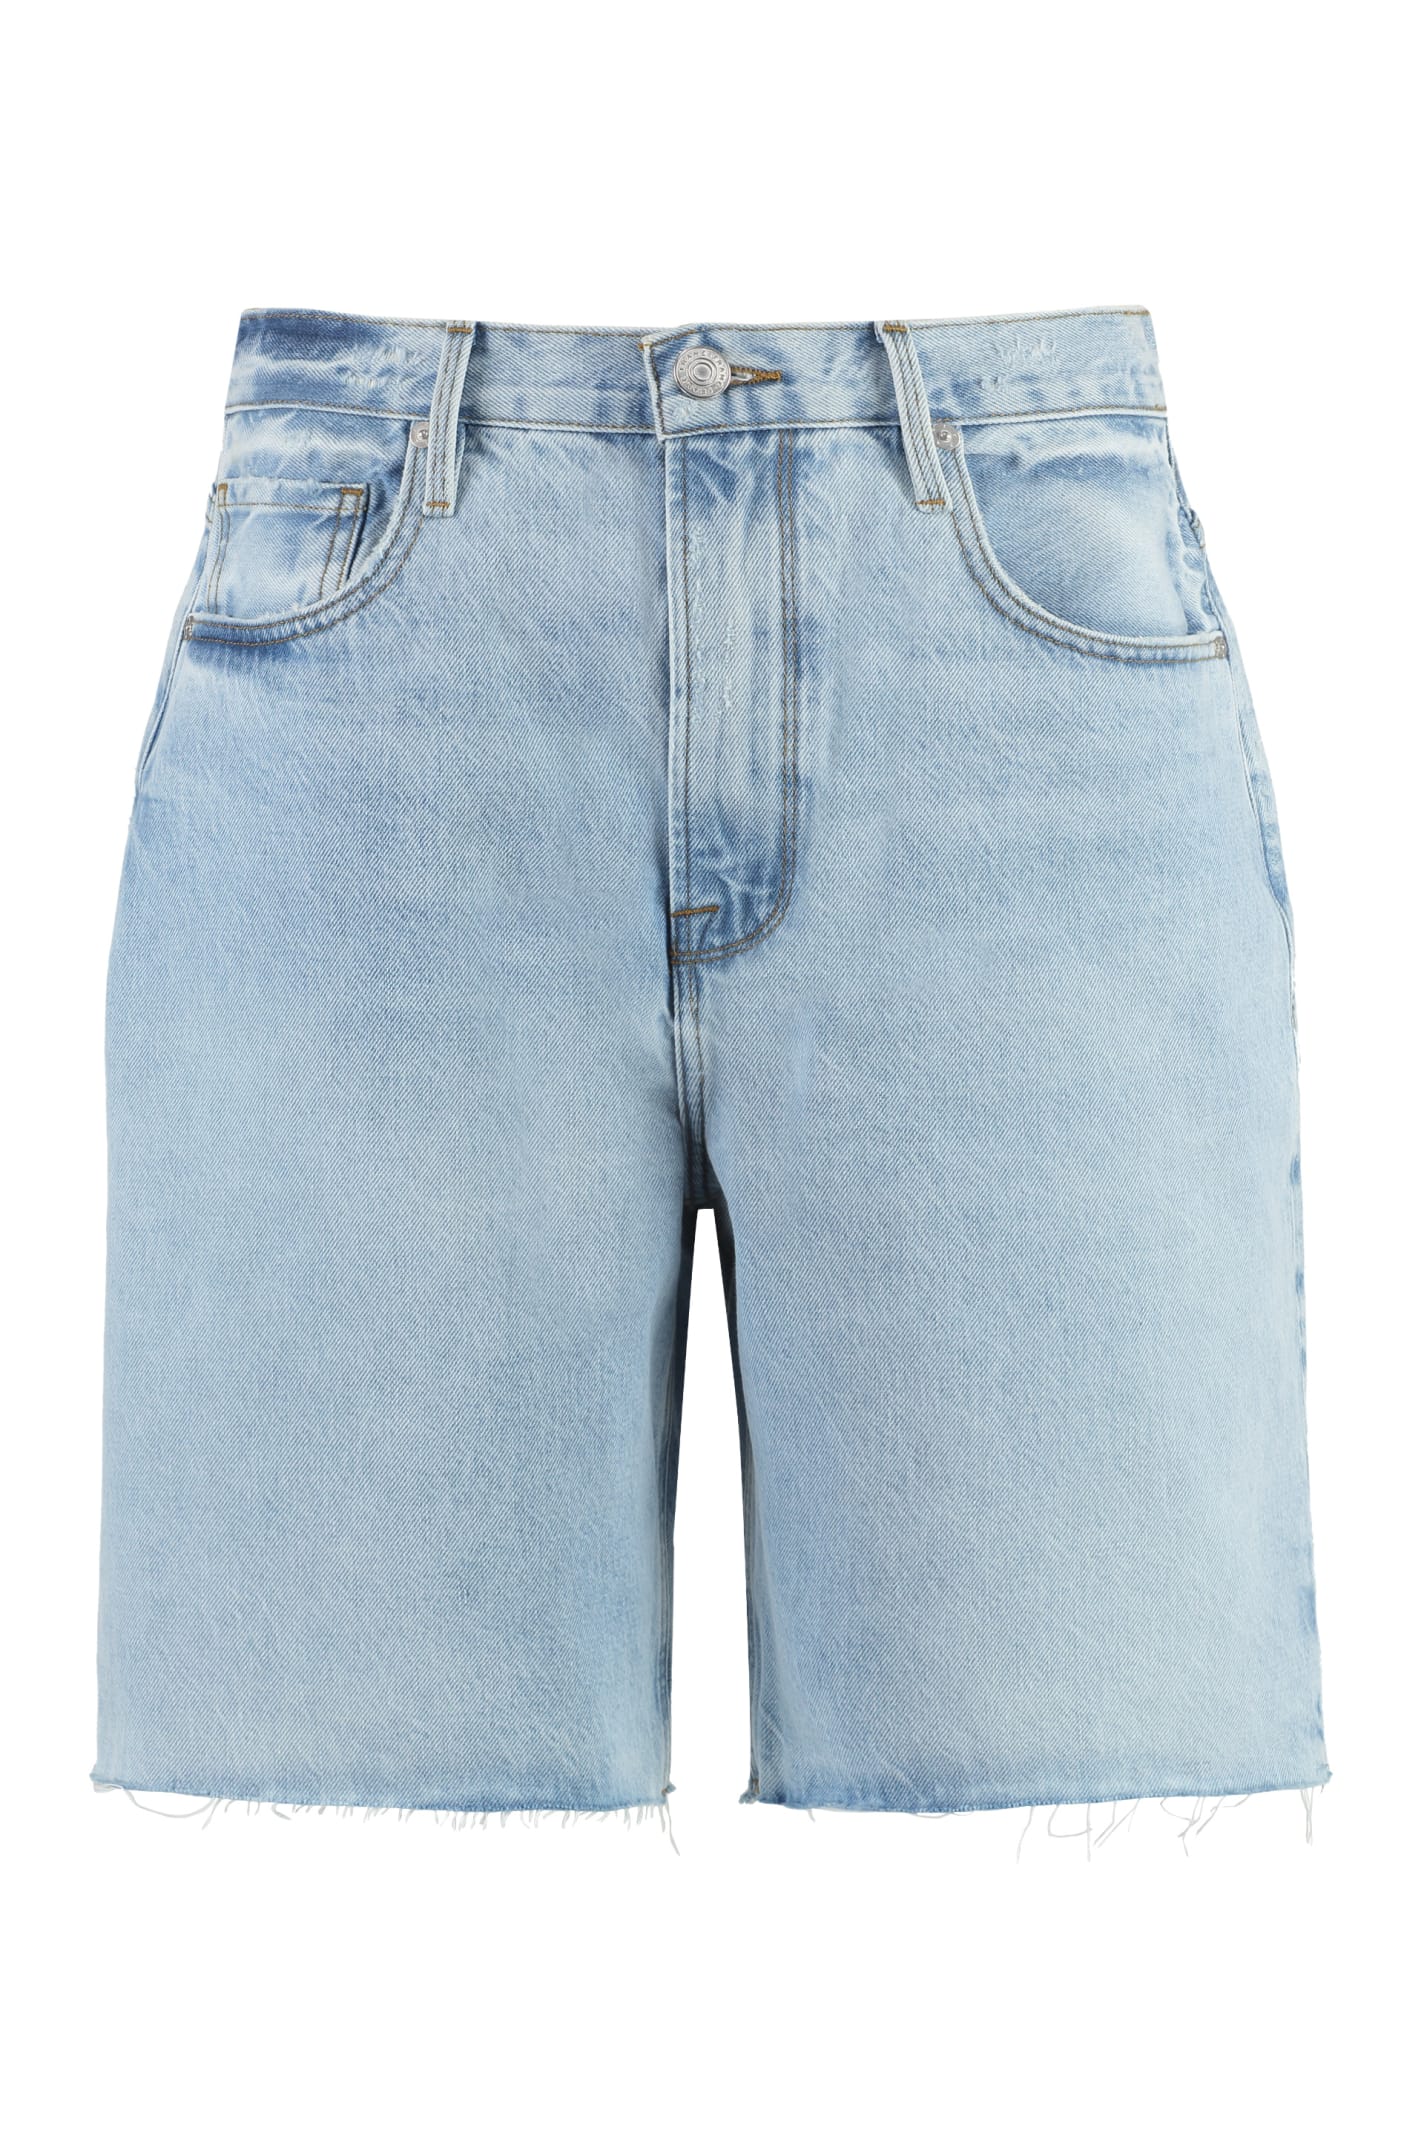 Frame Denim Shorts In Rssm Jeans